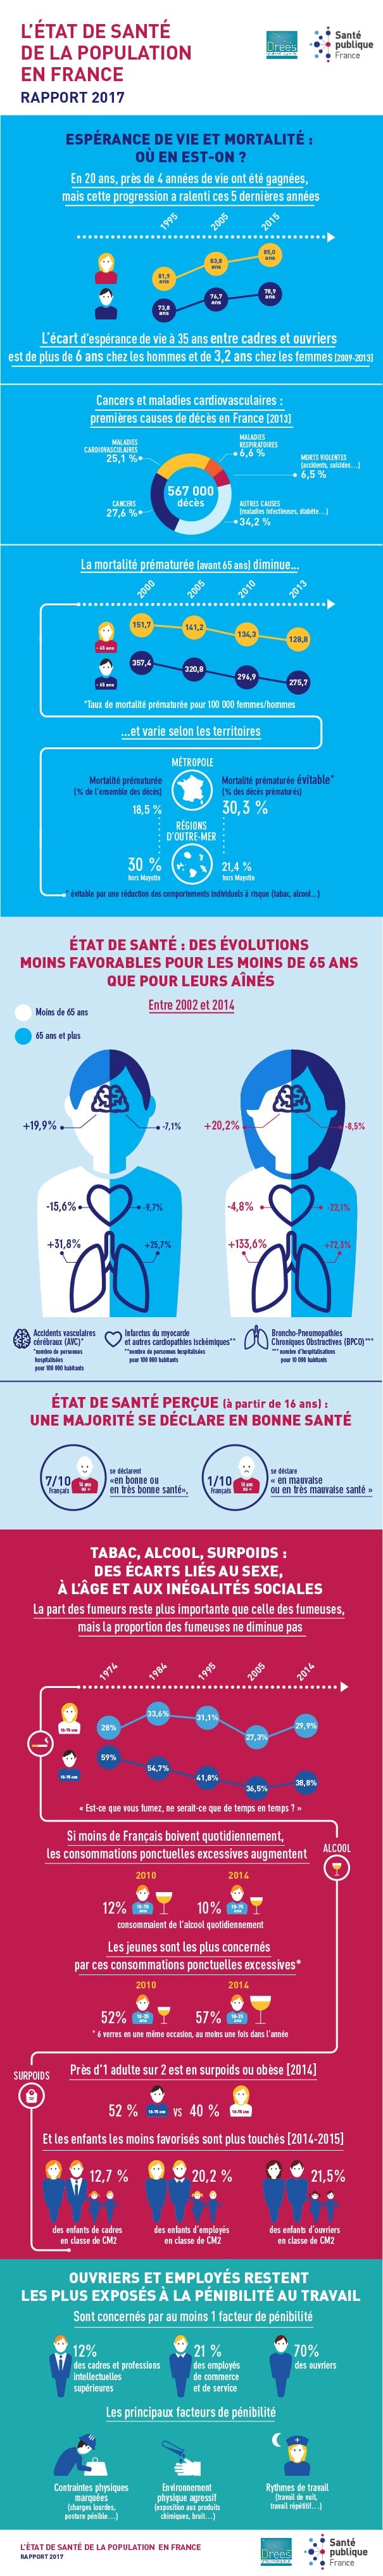 Infographie état de santé des français